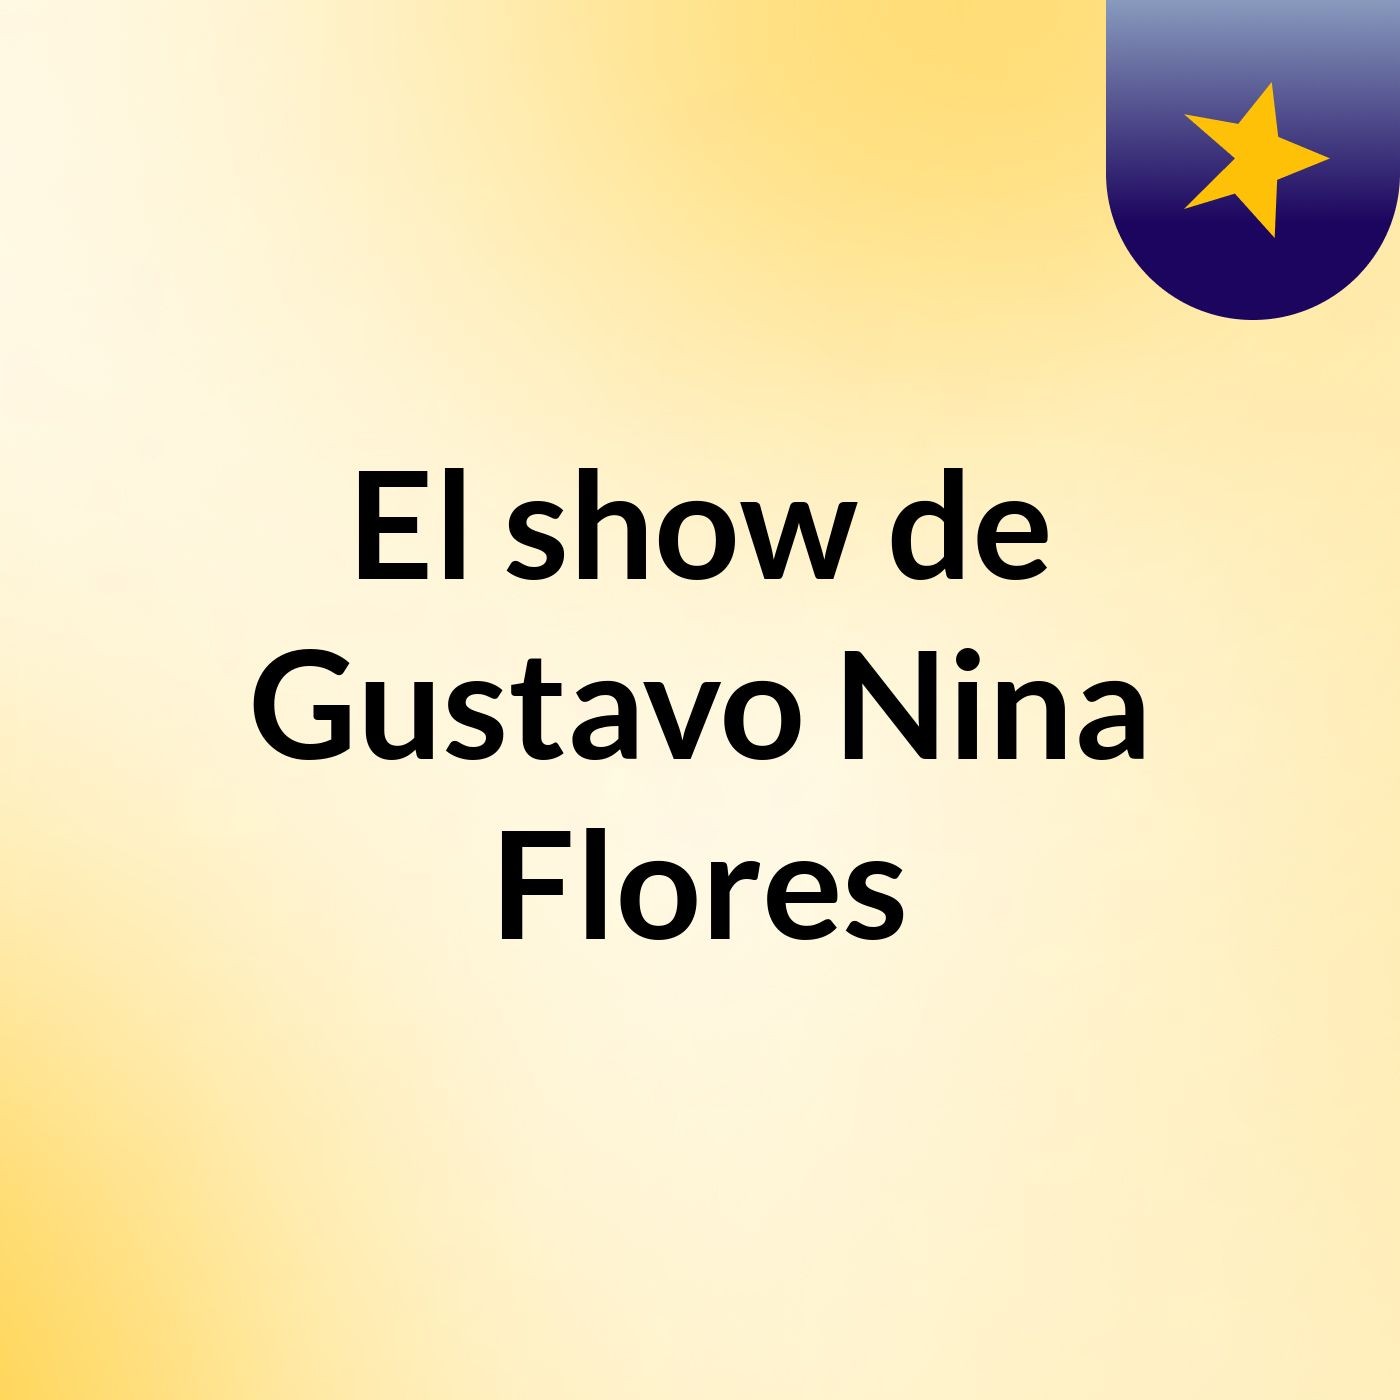 El show de Gustavo Nina Flores